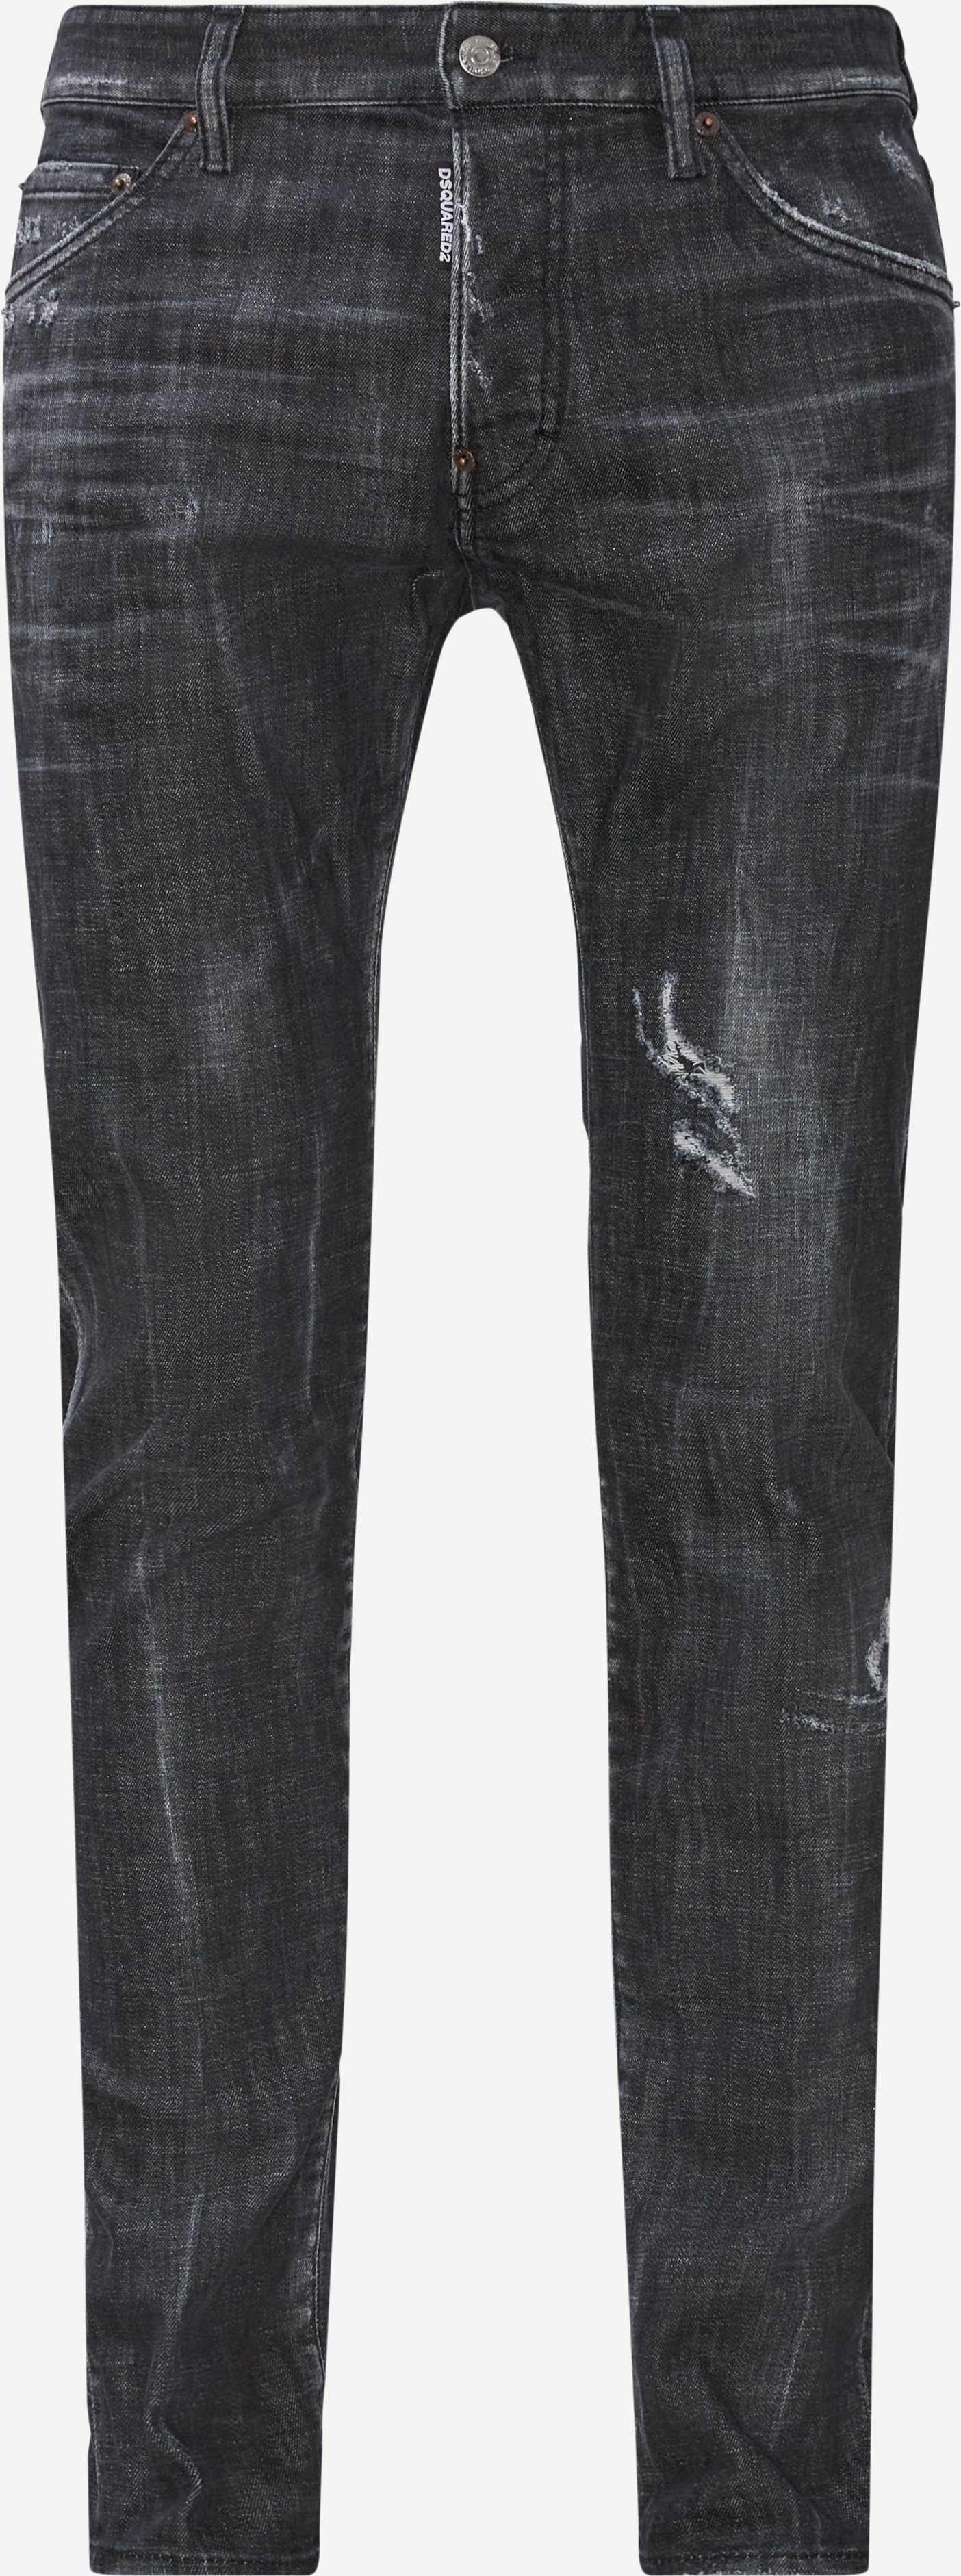 Jeans - Slim fit - Black